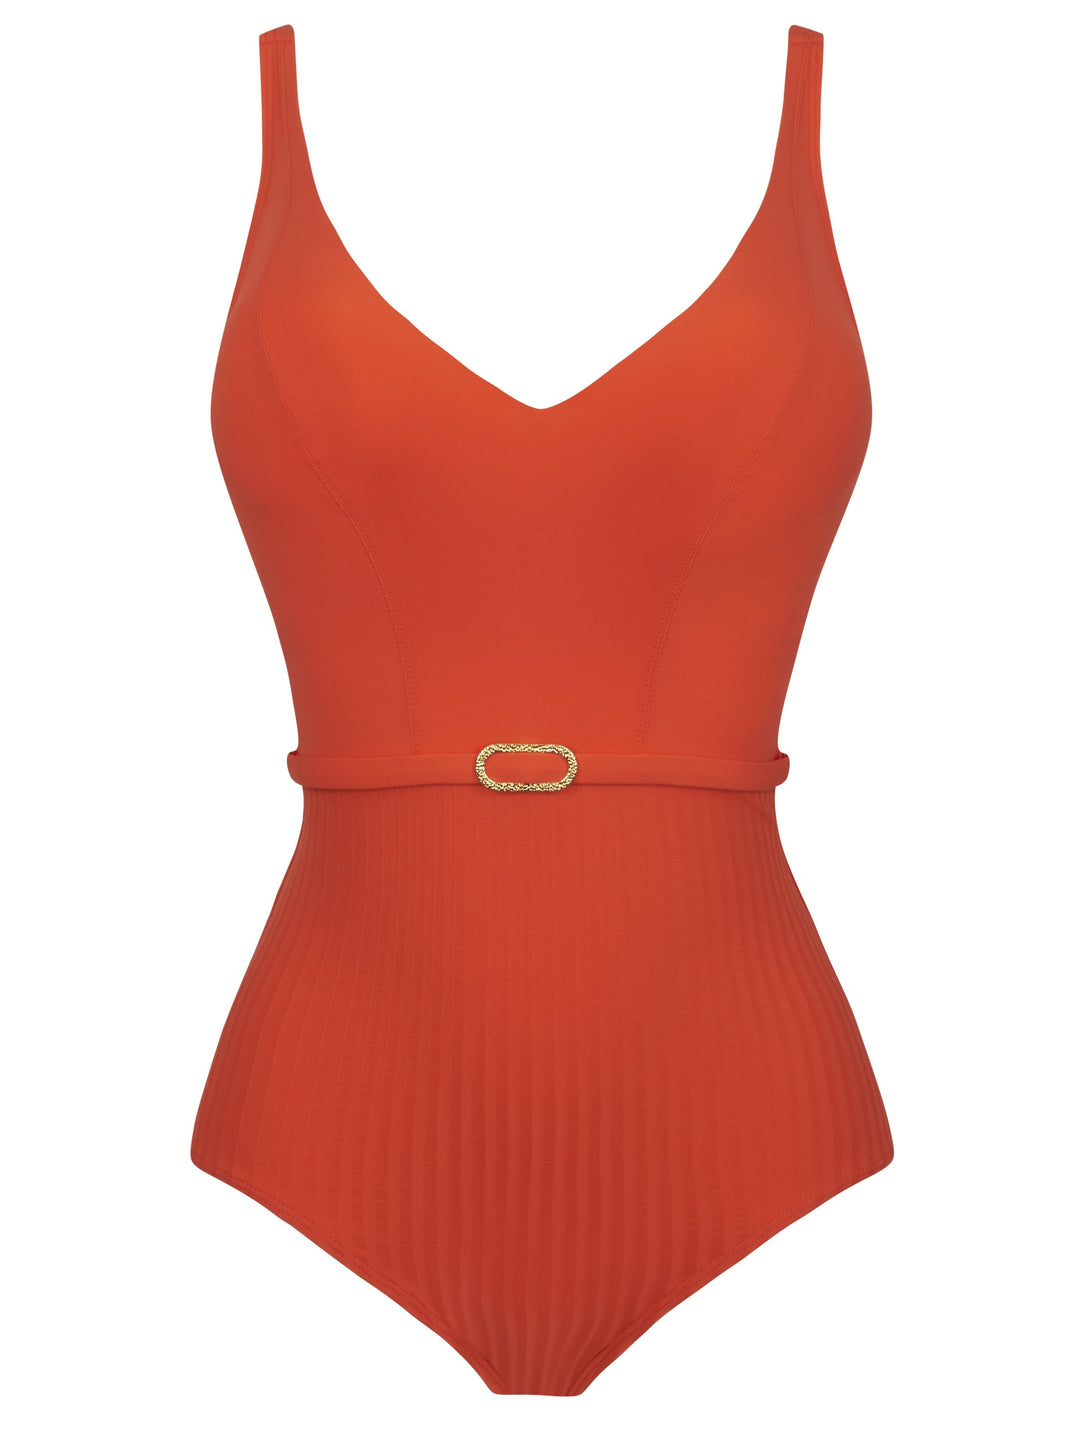 Empreinte - Costume da bagno iconico con ferretto e scollo a V Tangerine Costume da bagno con scollo profondo Empreinte Swimwear